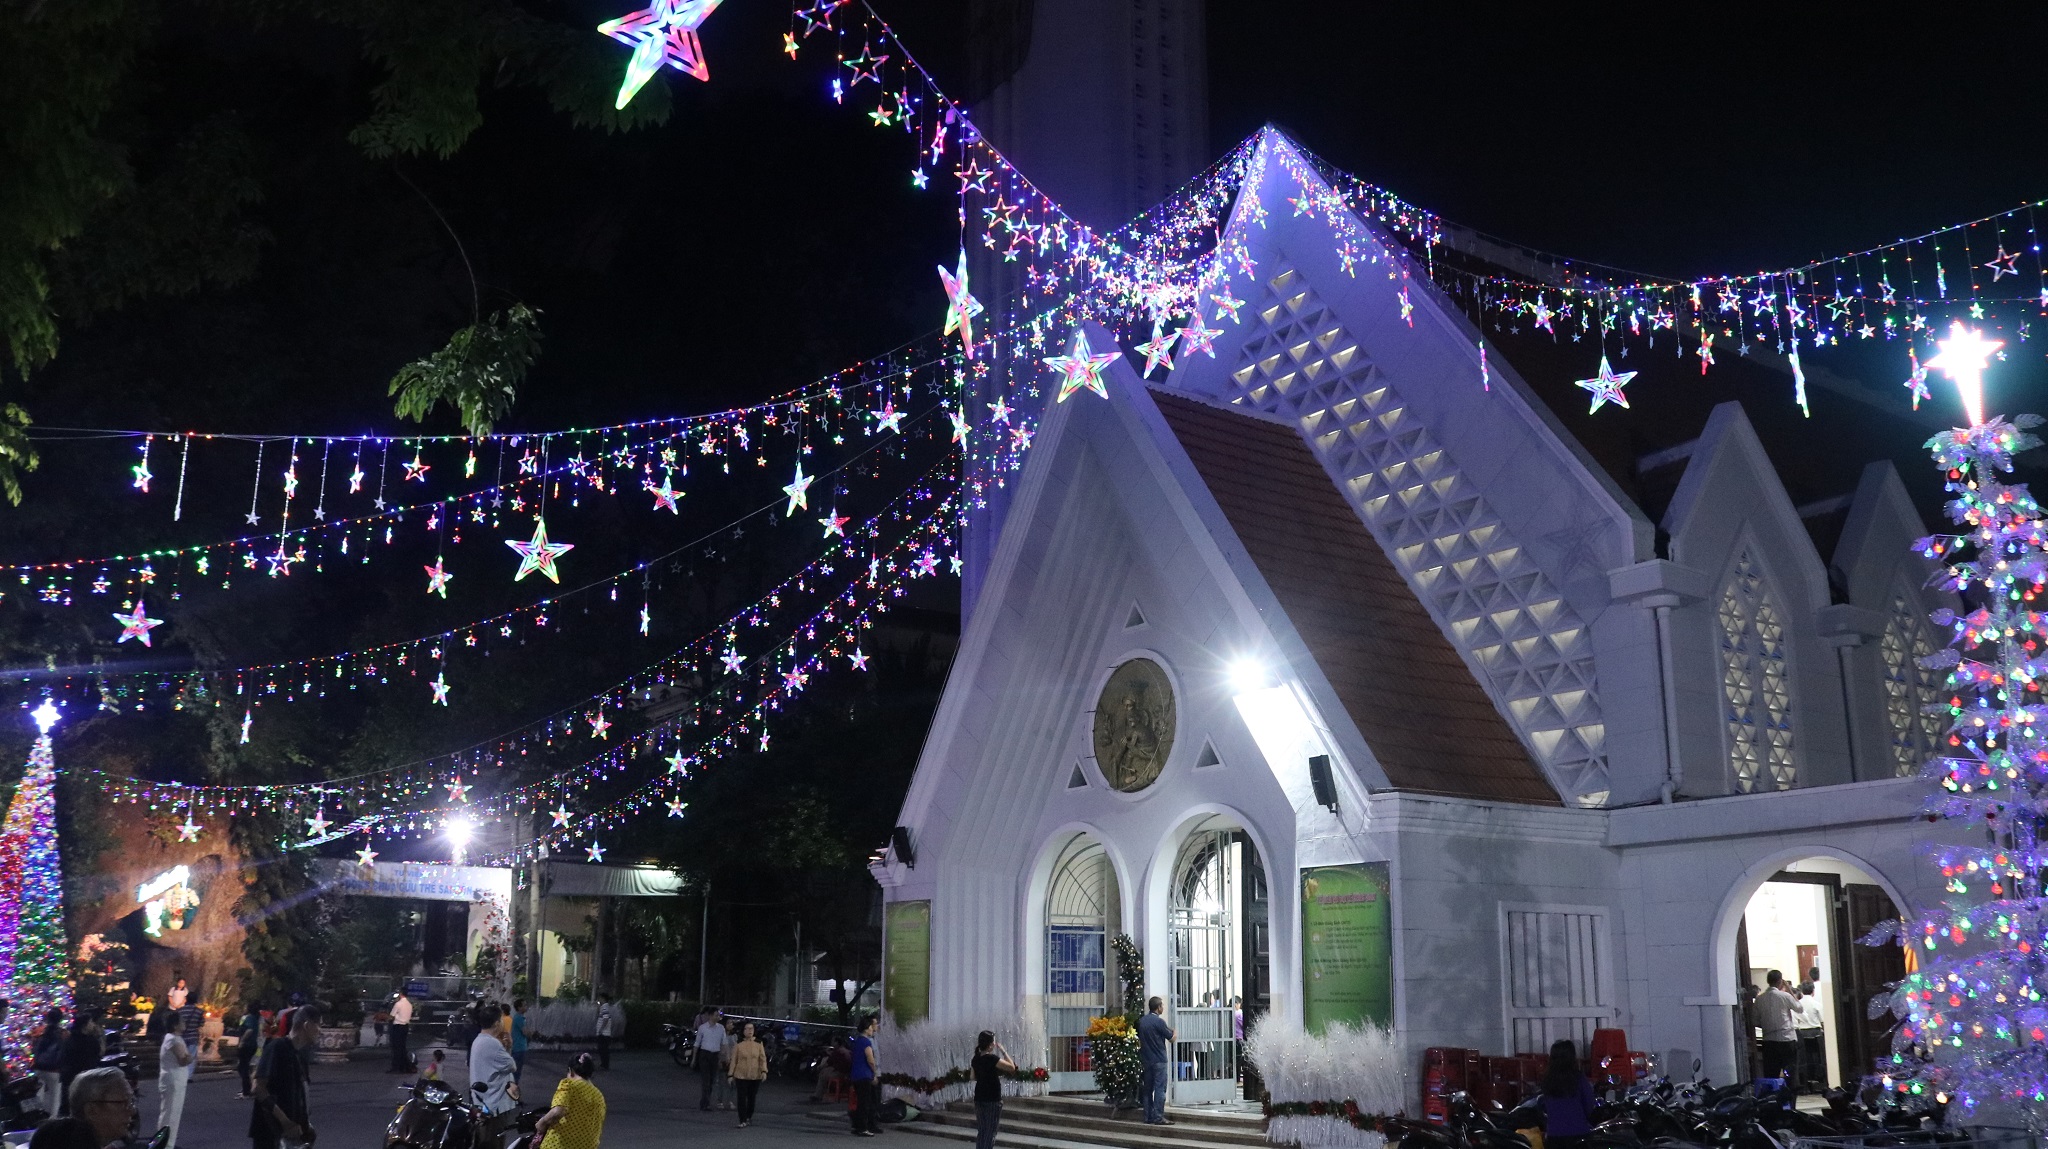 nhà thờ dòng chúa tại đường Kỳ Đồng là địa điểm cũng khá hot dịp giáng sinh